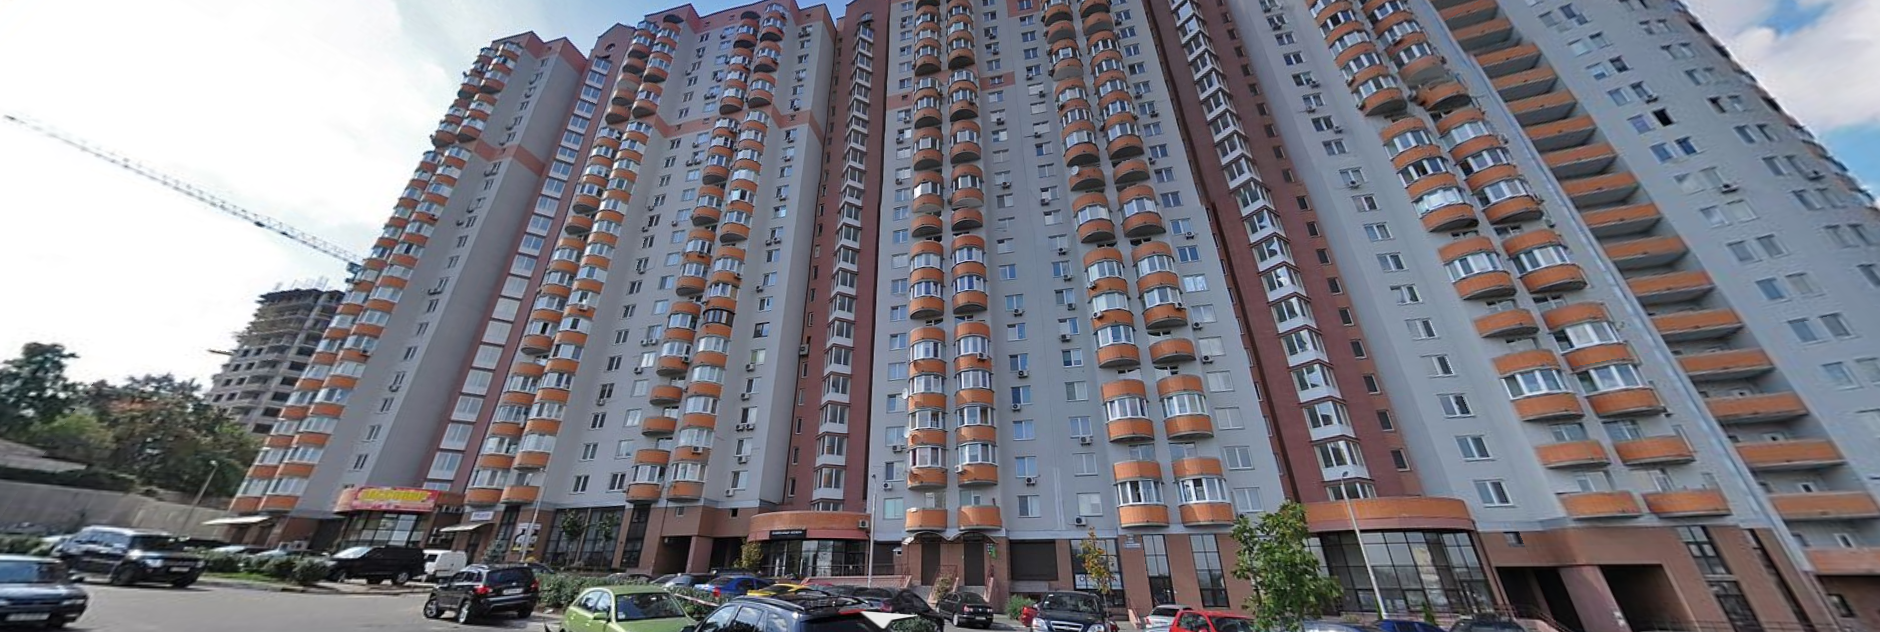 Высотка в Киеве, где находится квартира Бориса Коновалова. Скрин © yandex.ru/maps